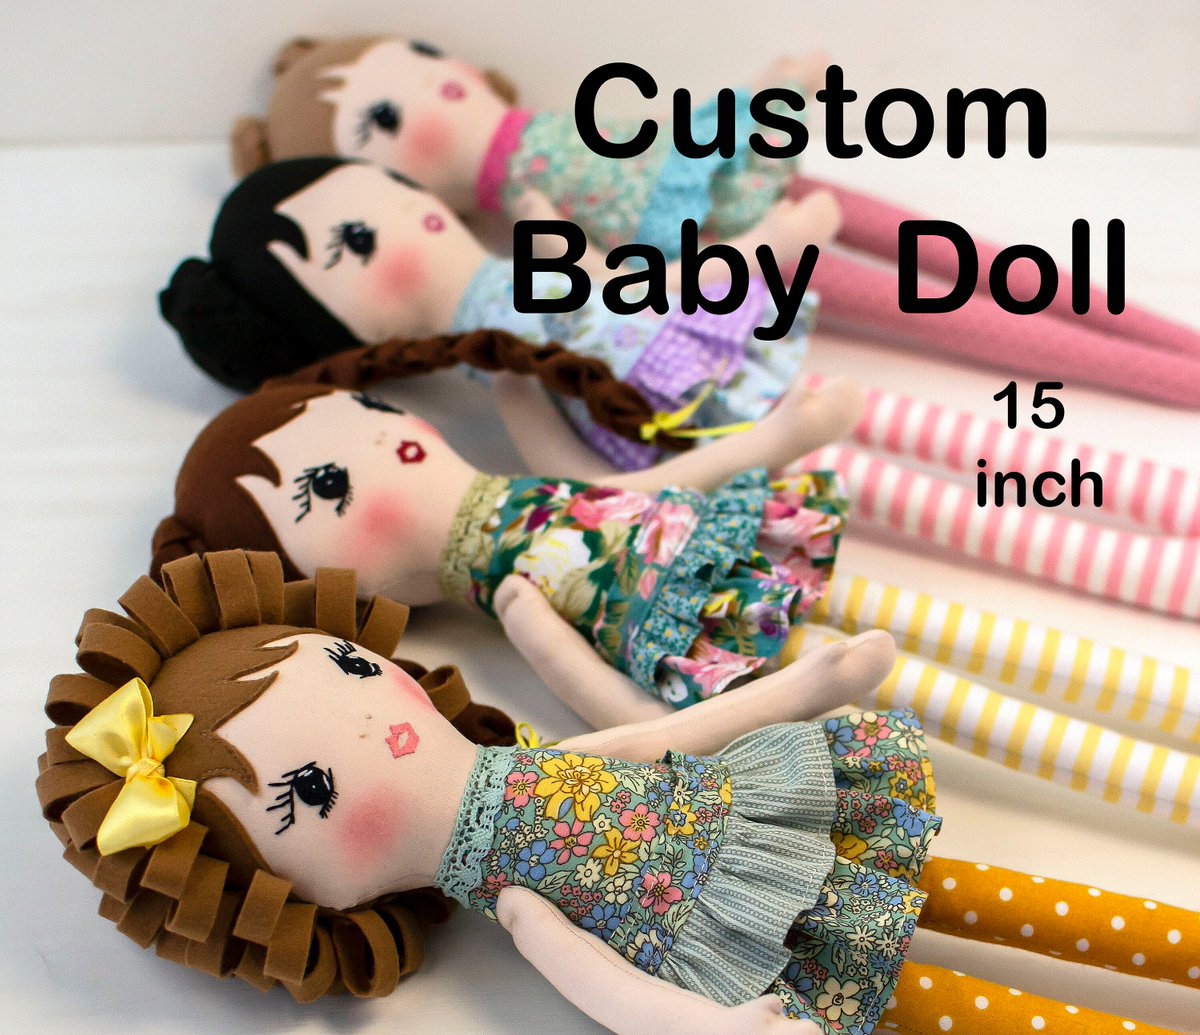 Rag doll handmade Custom doll Personalized cloth doll etsy.me/3JjRUib #rainbow #babyshower #customdoll #ragdoll #clothdoll #fabricdoll #heirloomdoll #personalizeddoll #dollwithclothes